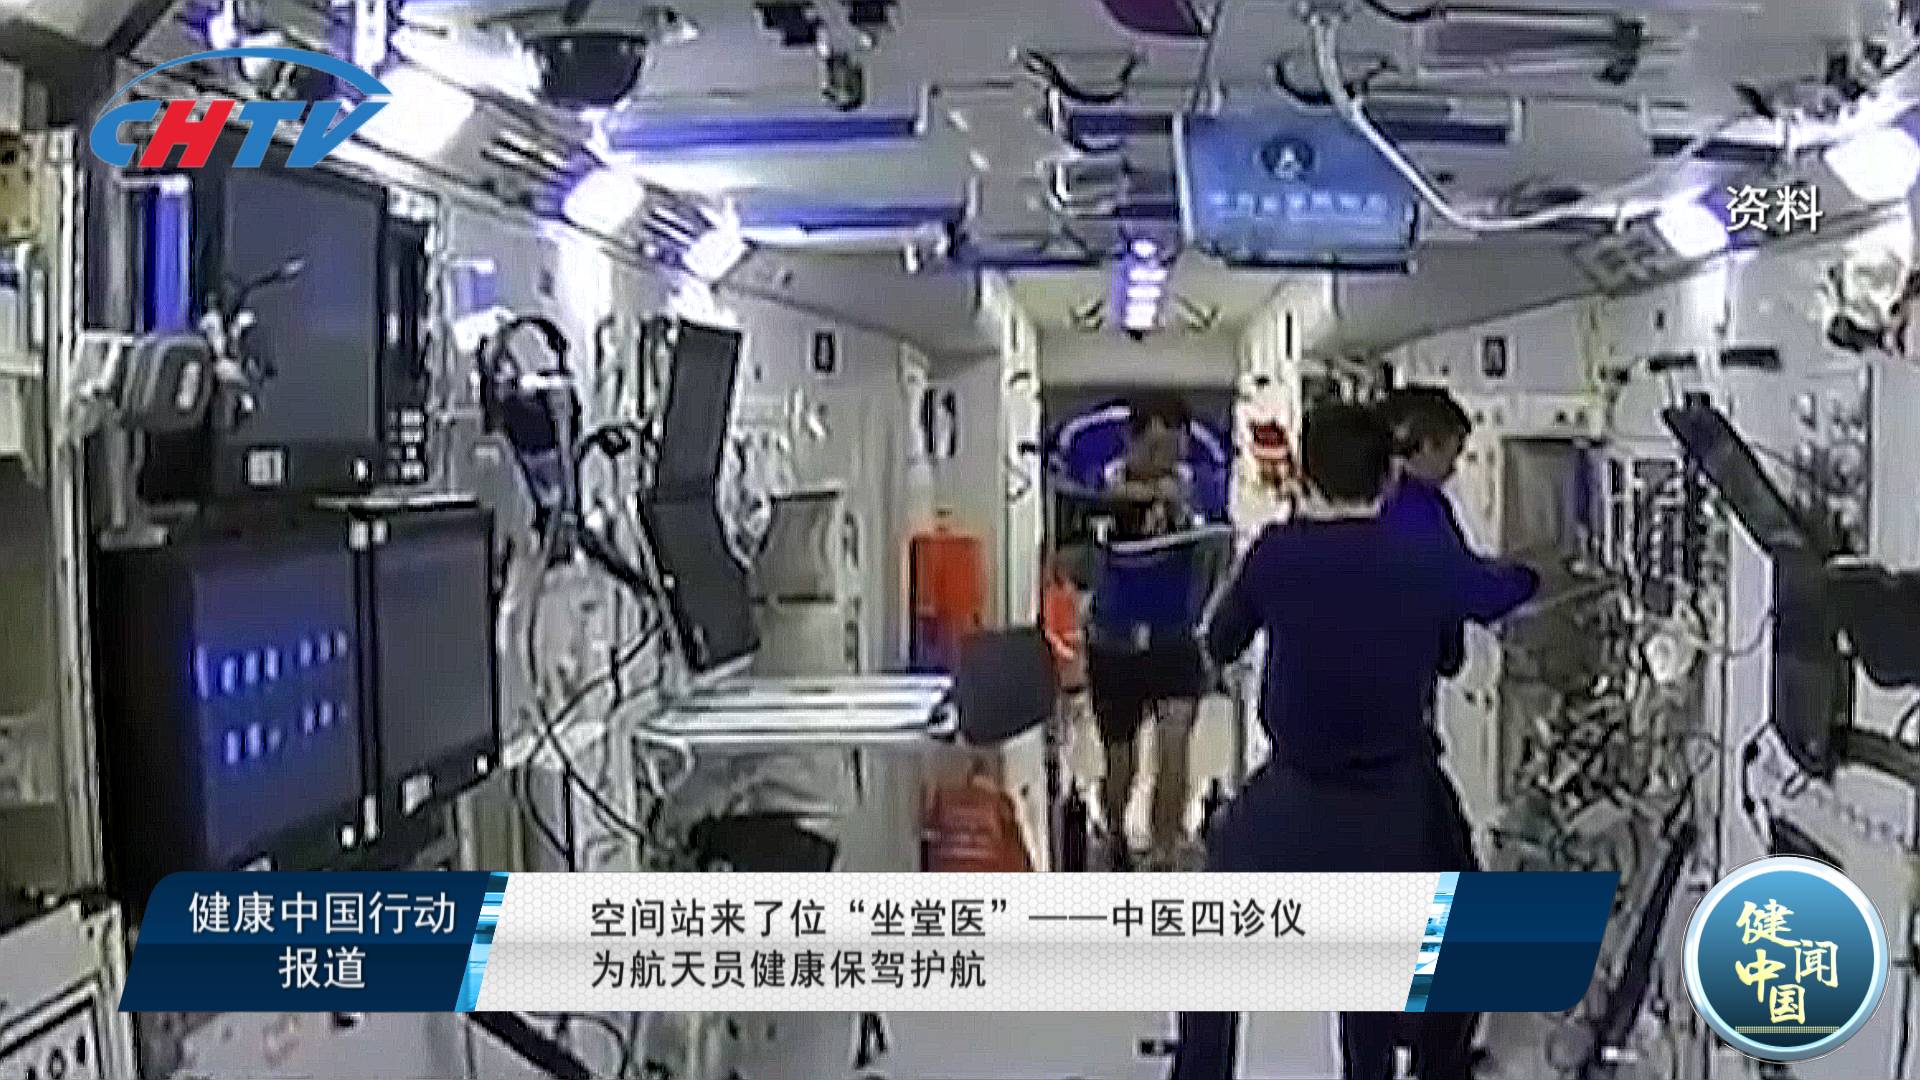 空间站来了位 " 坐堂医 "—— 中医四诊仪为航天员健康保驾护航